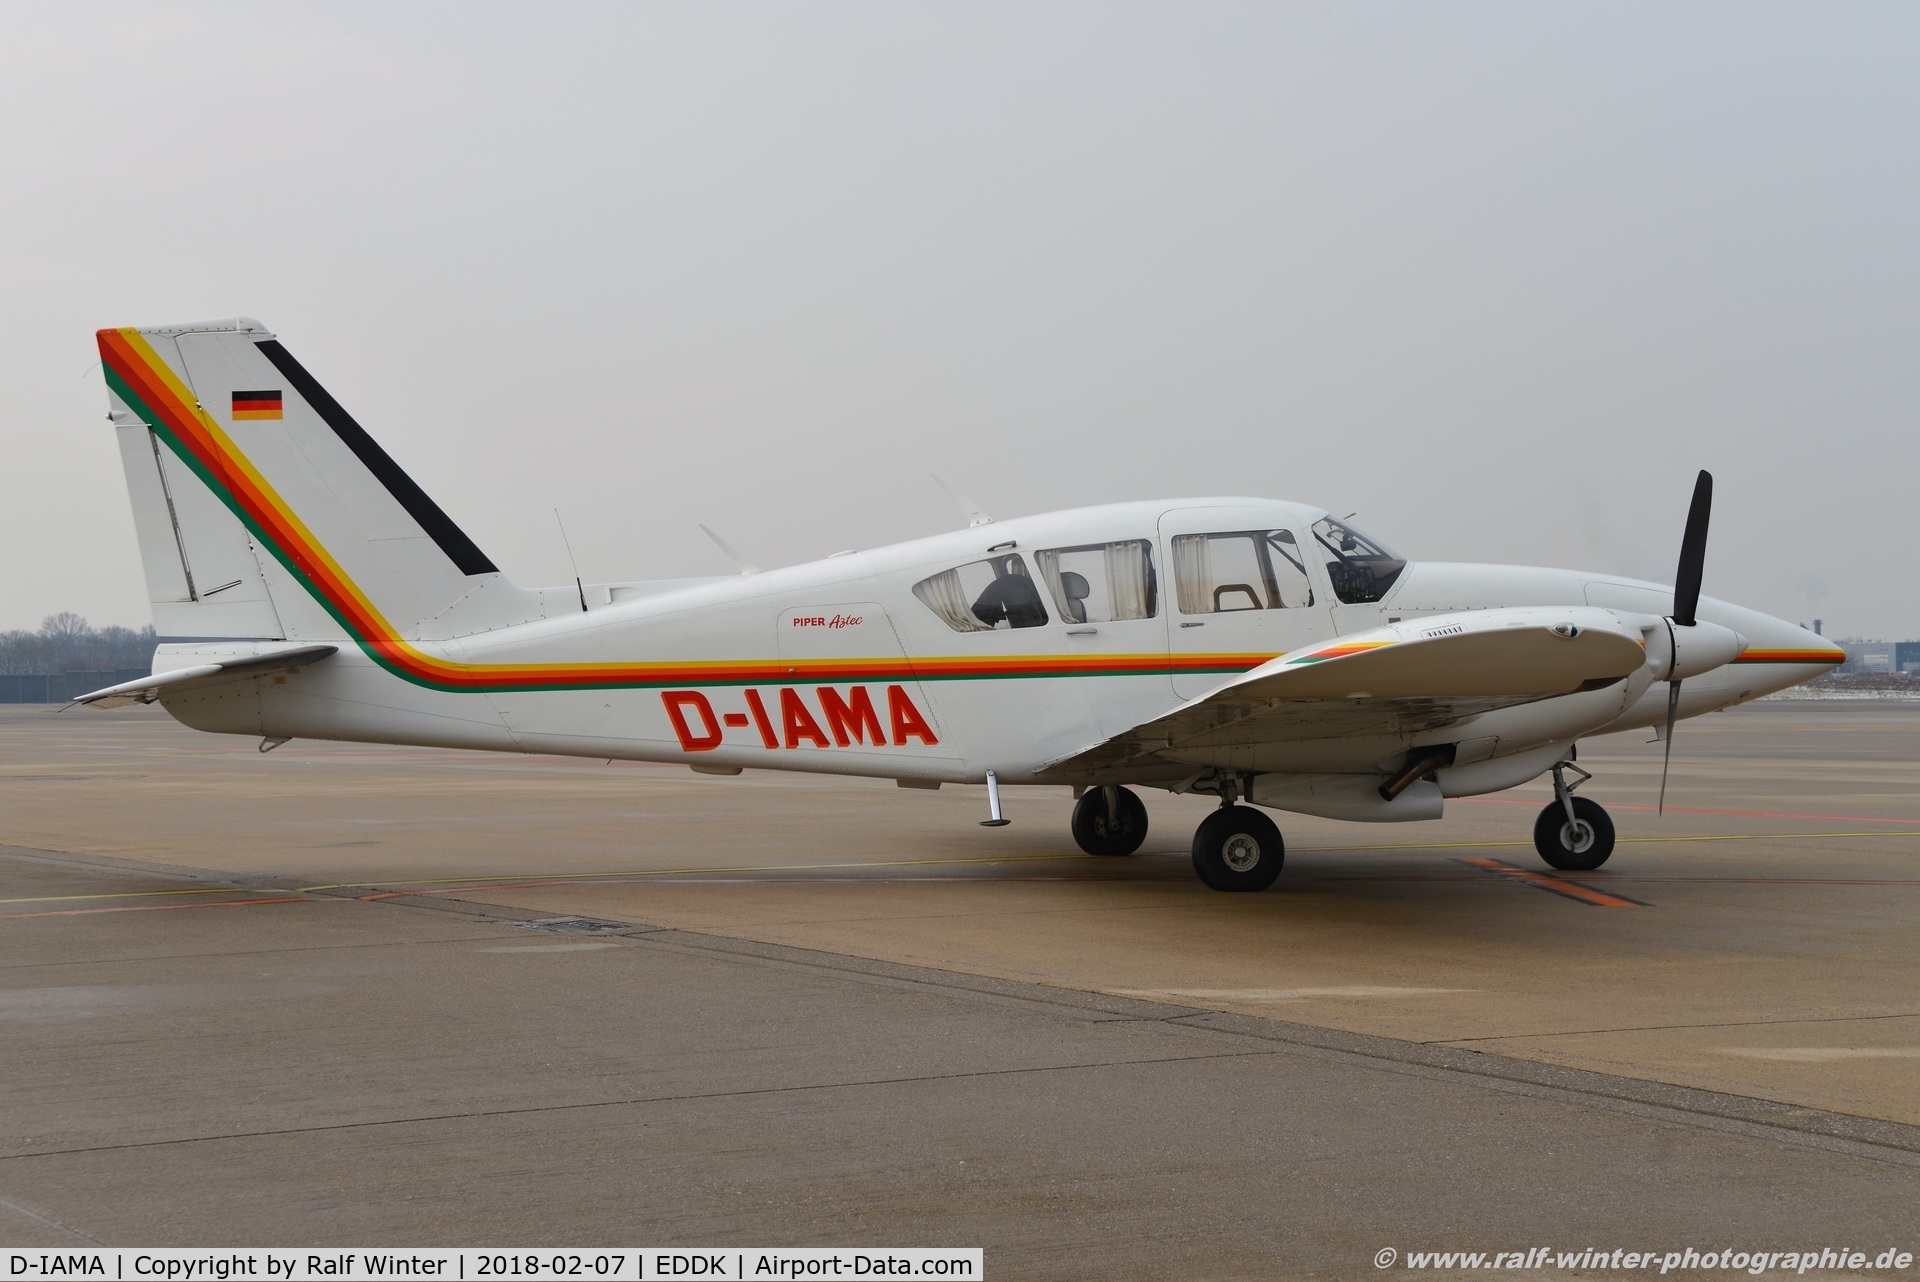 D-IAMA, Piper PA-23-250 Aztec E C/N 27-7305204, Piper PA-23-250 Aztec - Private - 27-7305204 - D-IAMA - 07.02.2018 - CGN